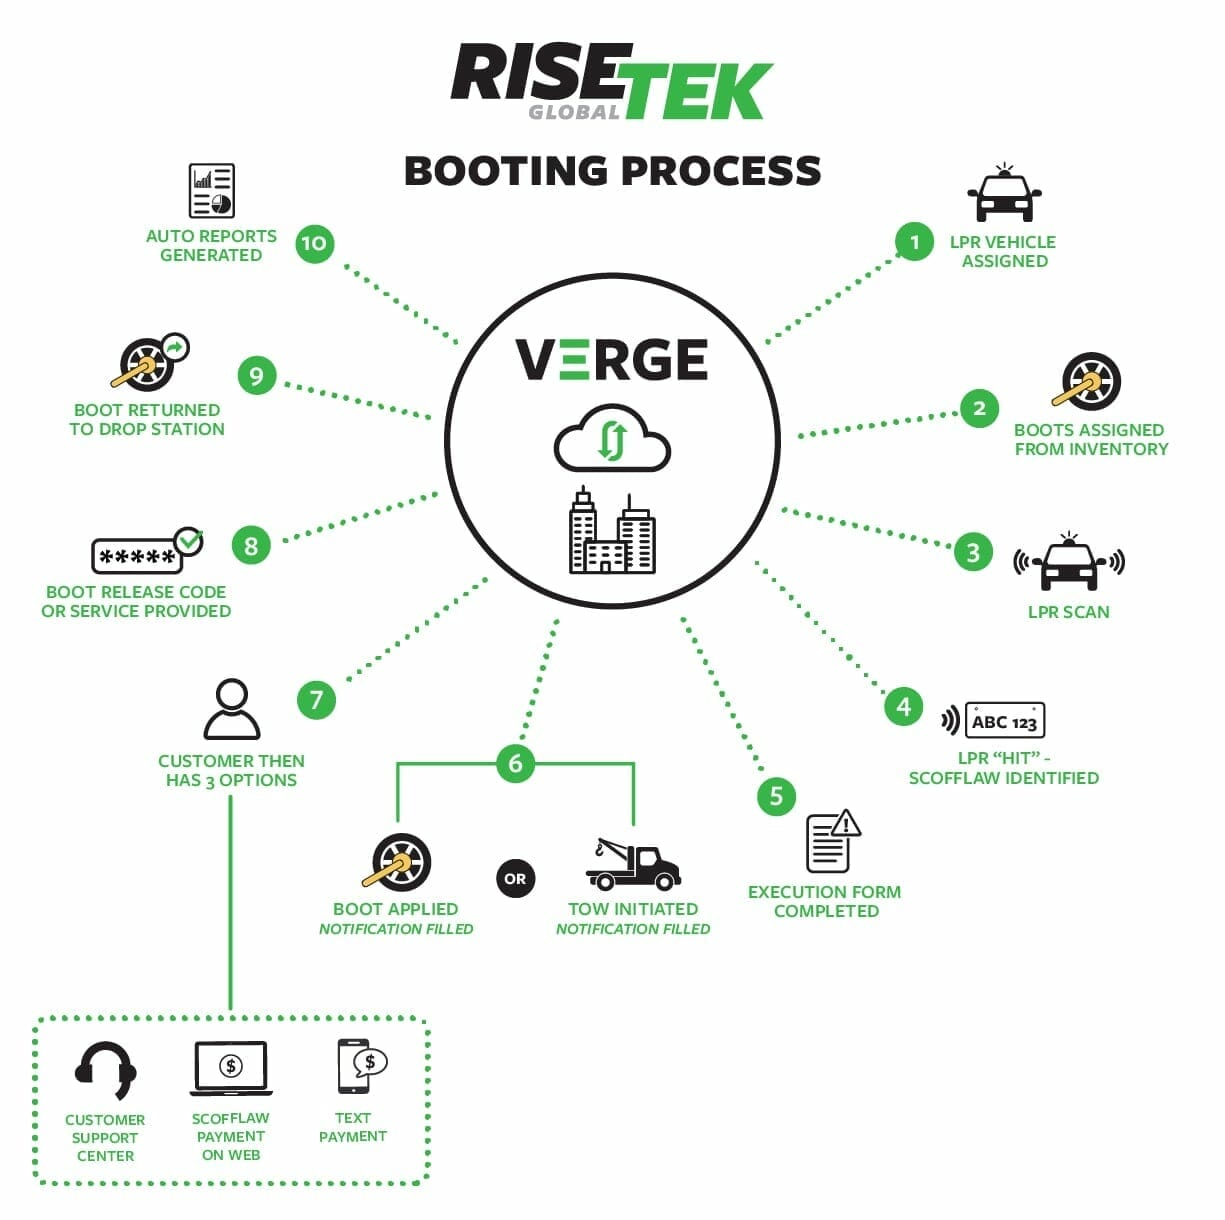 RISETEK Global Booting Process